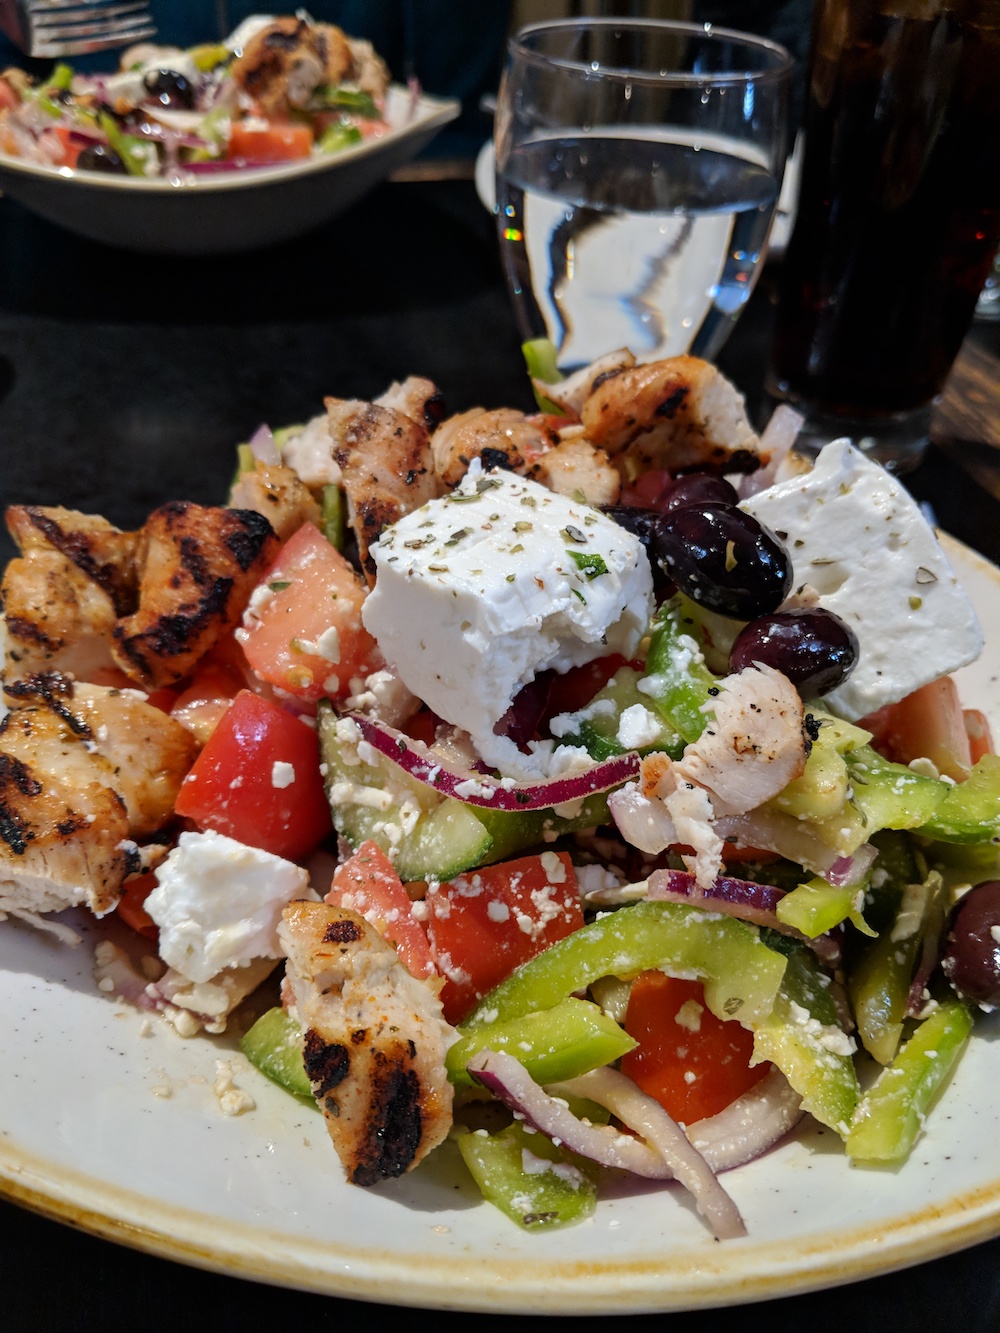 Greek Salad with Chicken at Balkan Restaurant in Banff